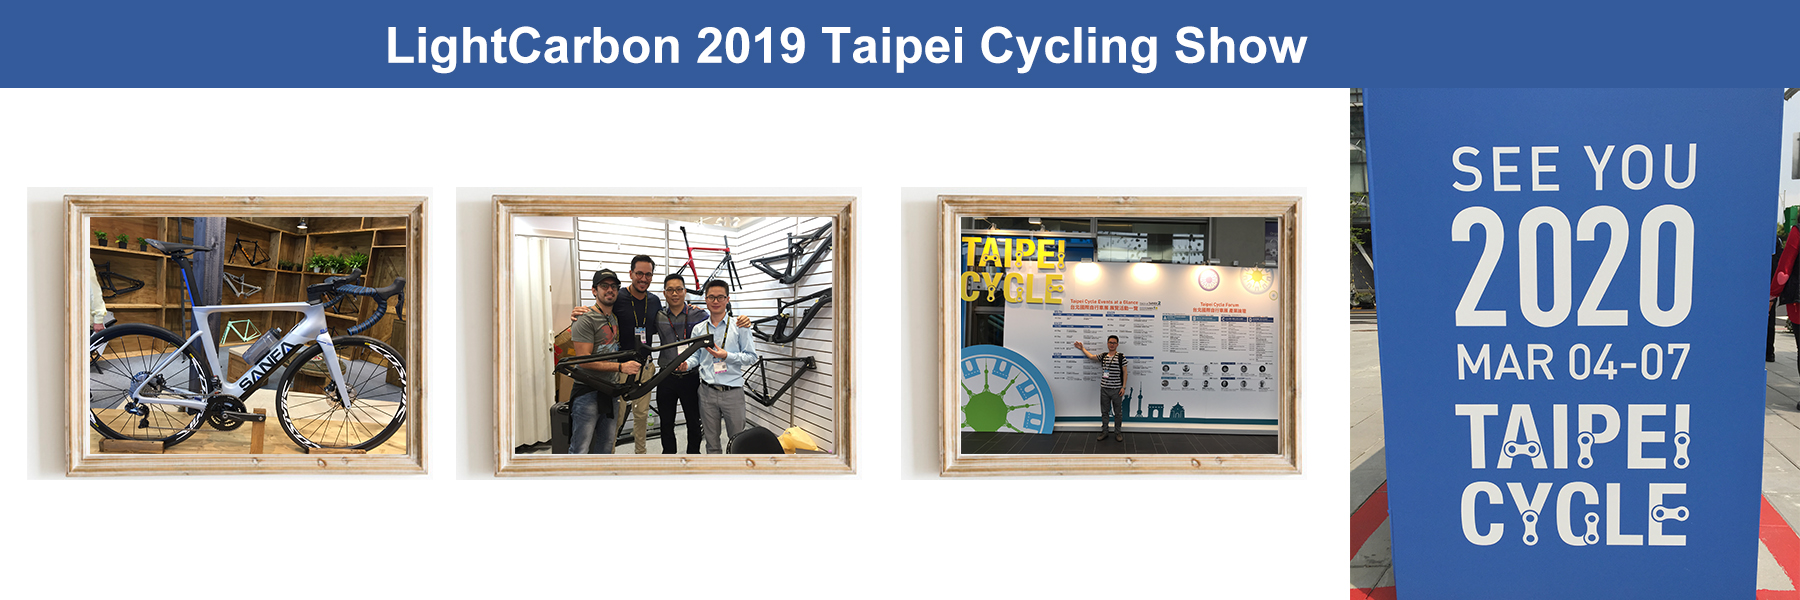 2019 lightcarbon Taipei cykelshow